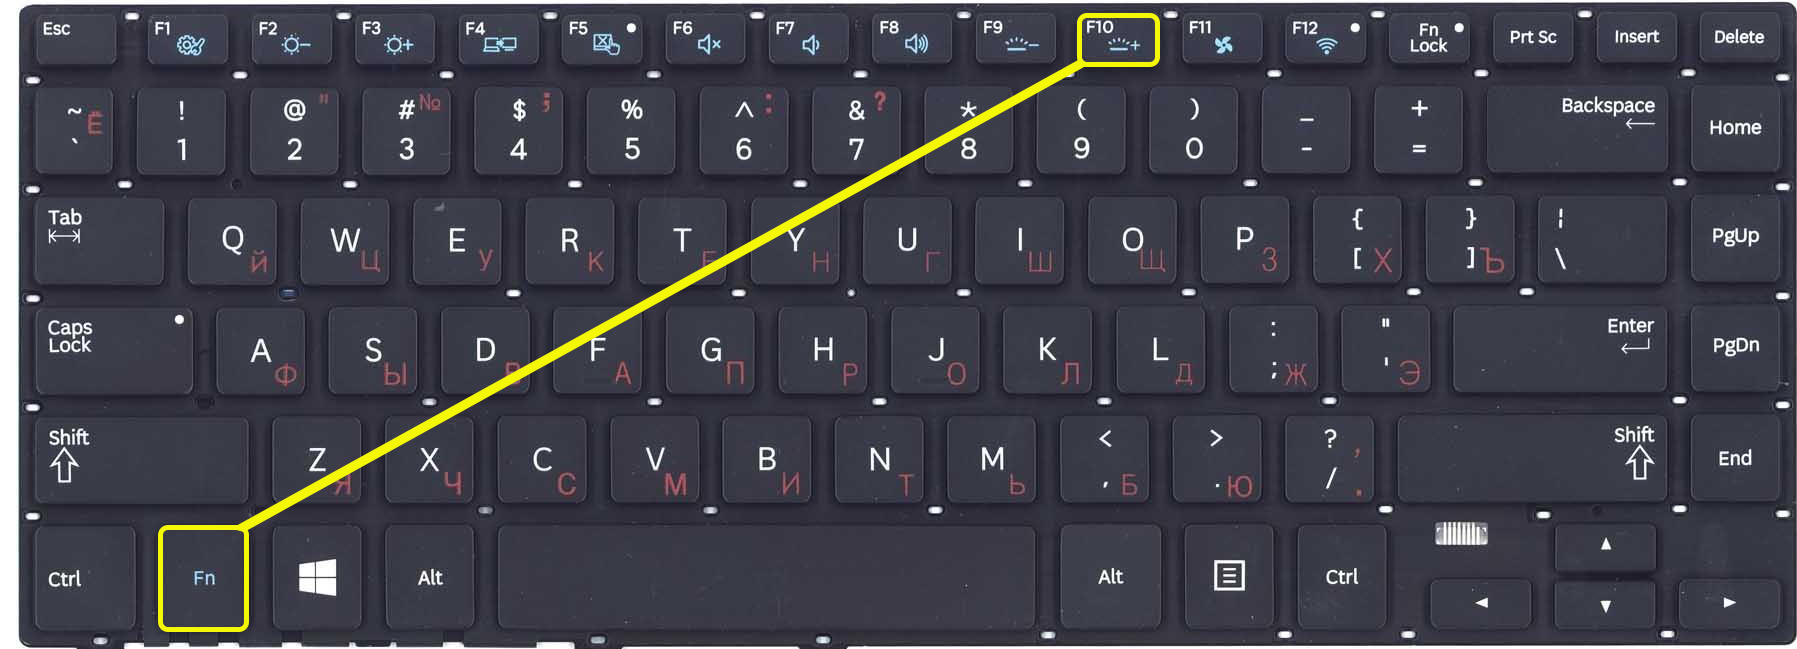 Как выключить клавиатуру компьютера не дергая за шнур и как заблокировать клавиатуру ноутбука и ПК (или временно отключить). манеры